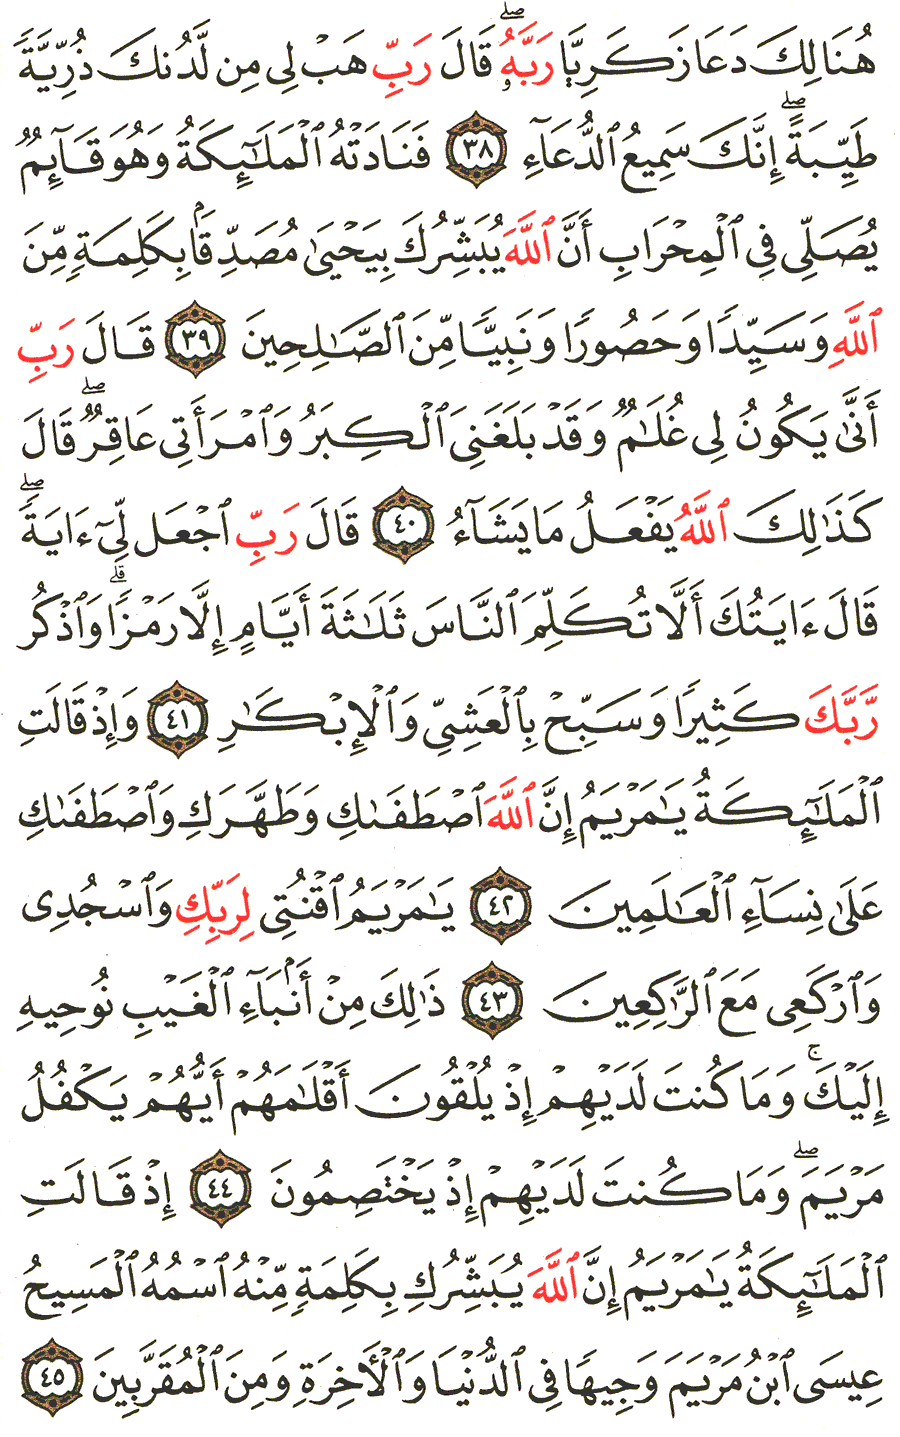 الصفحة رقم 55 من القرآن الكريم مكتوبة من المصحف